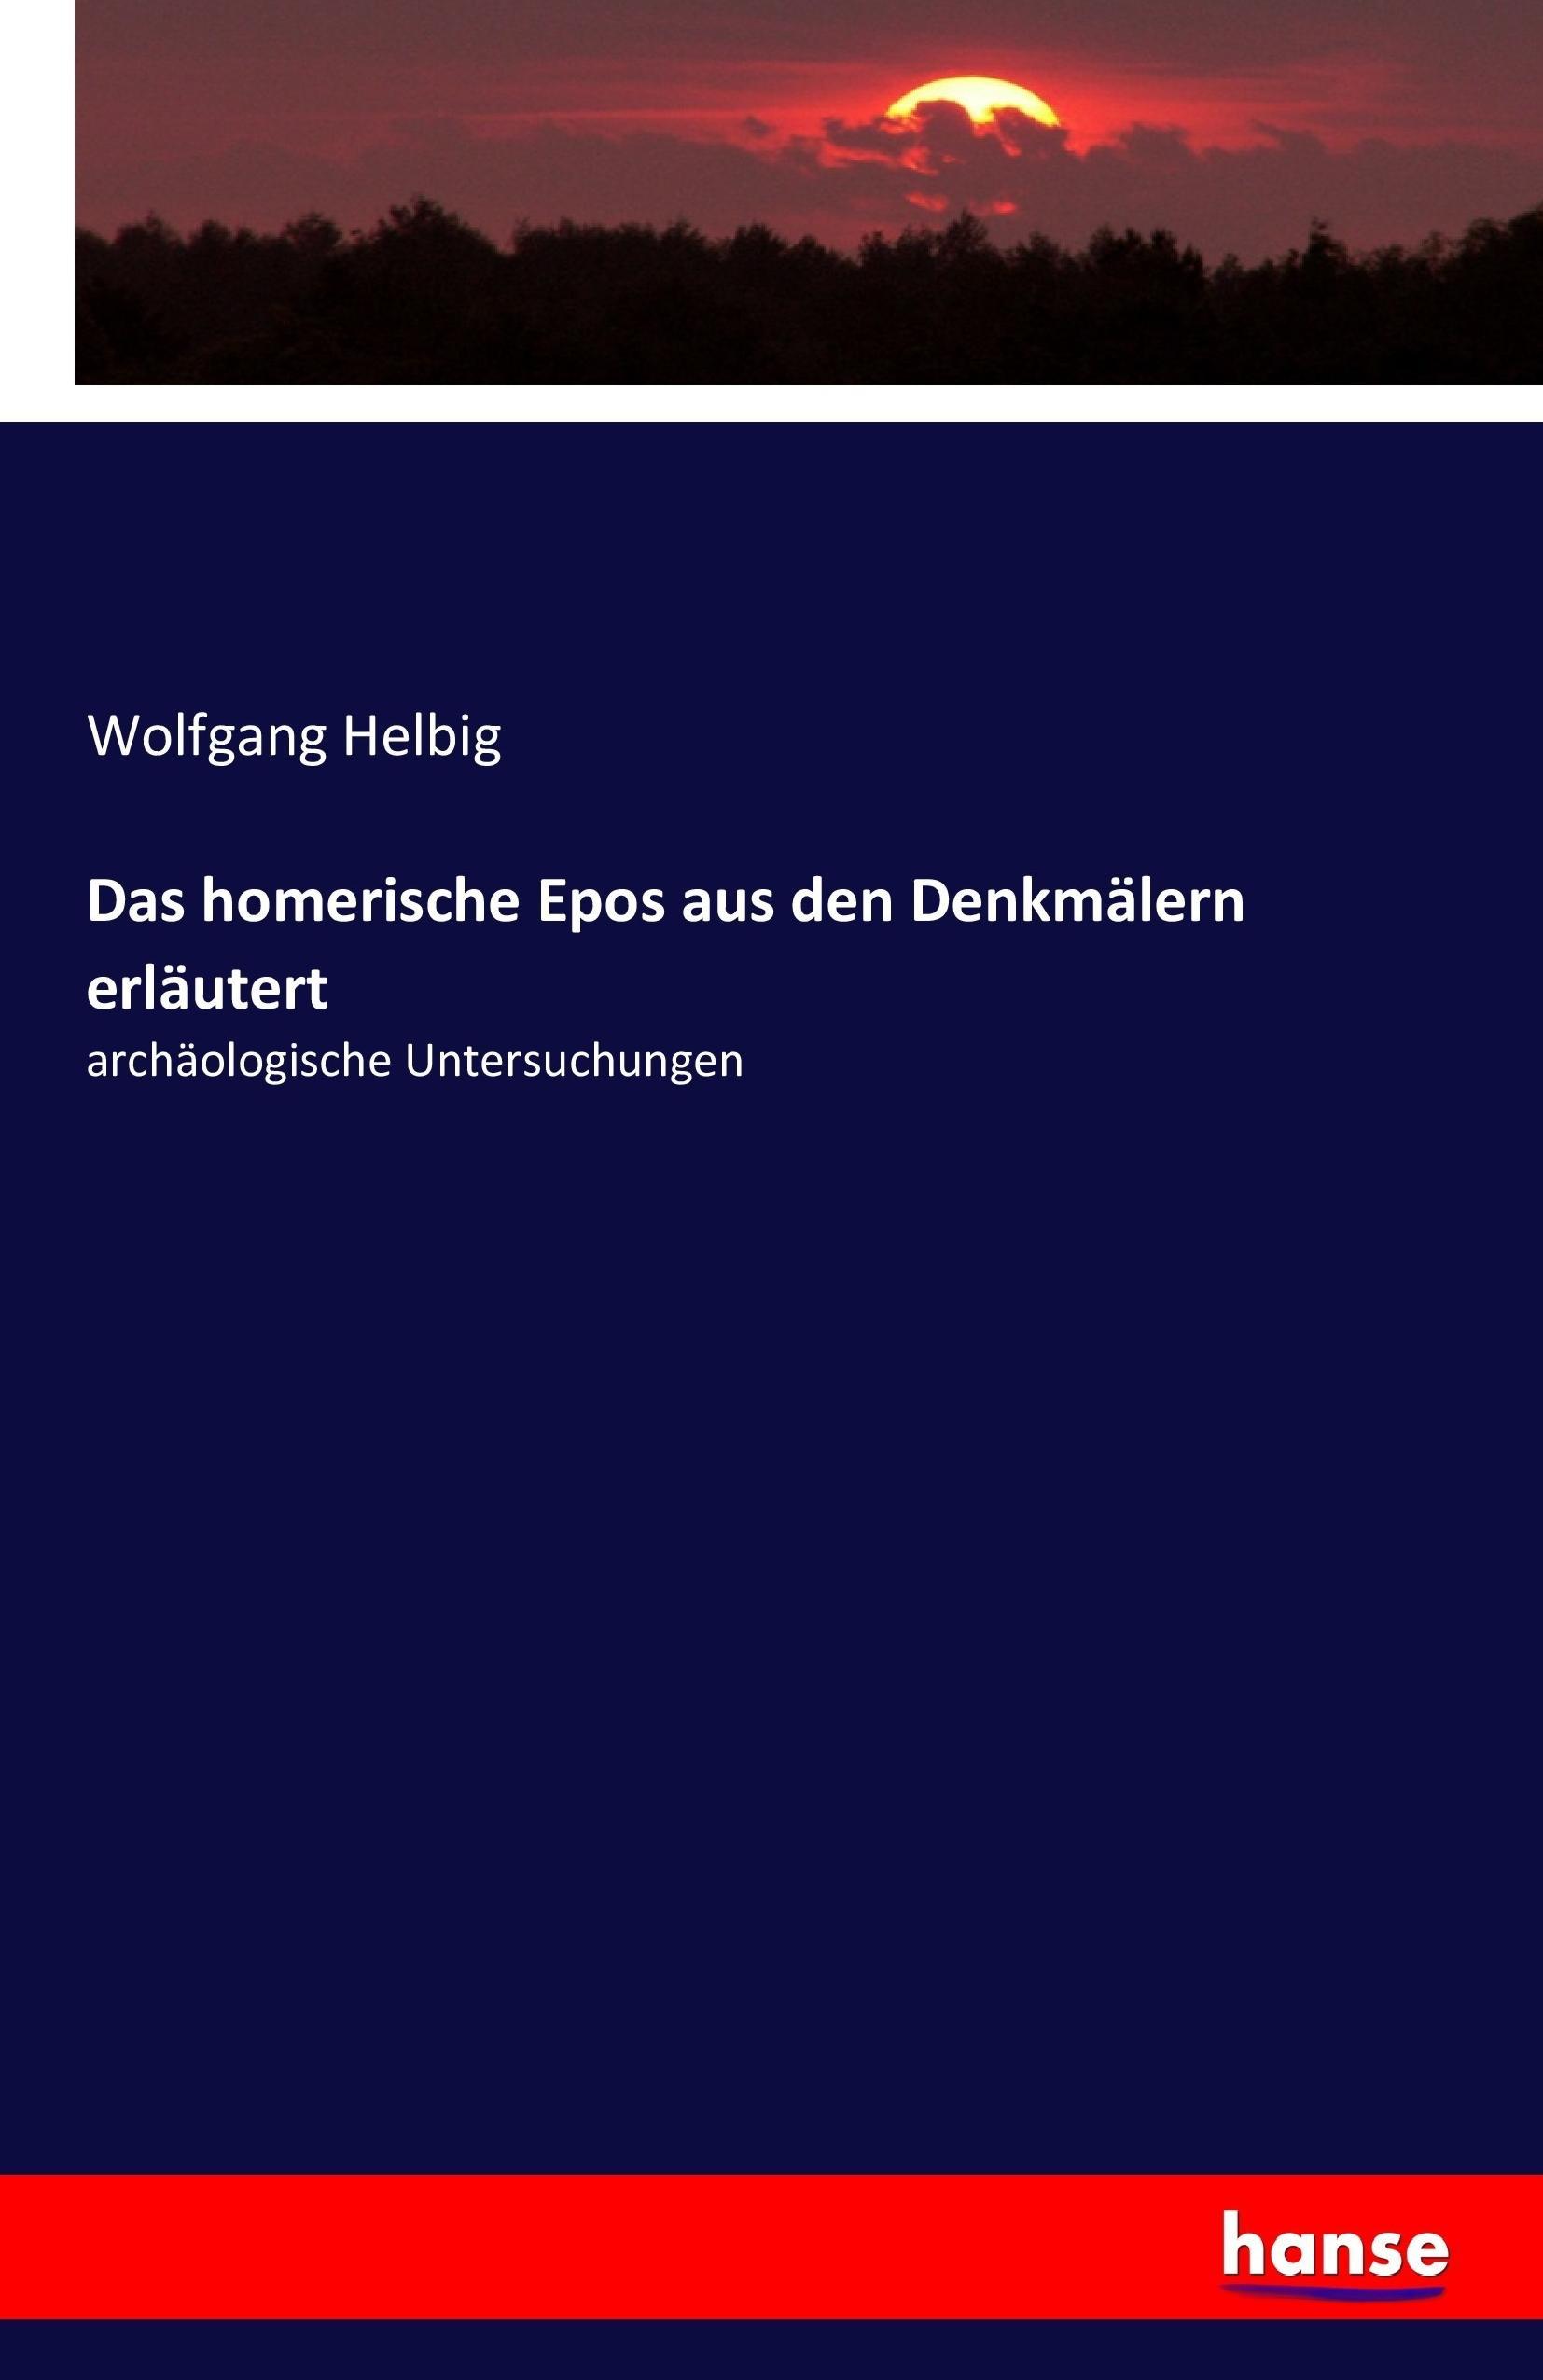 Das homerische Epos aus den Denkmaelern erlaeutert, archaeologische Untersuchungen - Helbig, Wolfgang